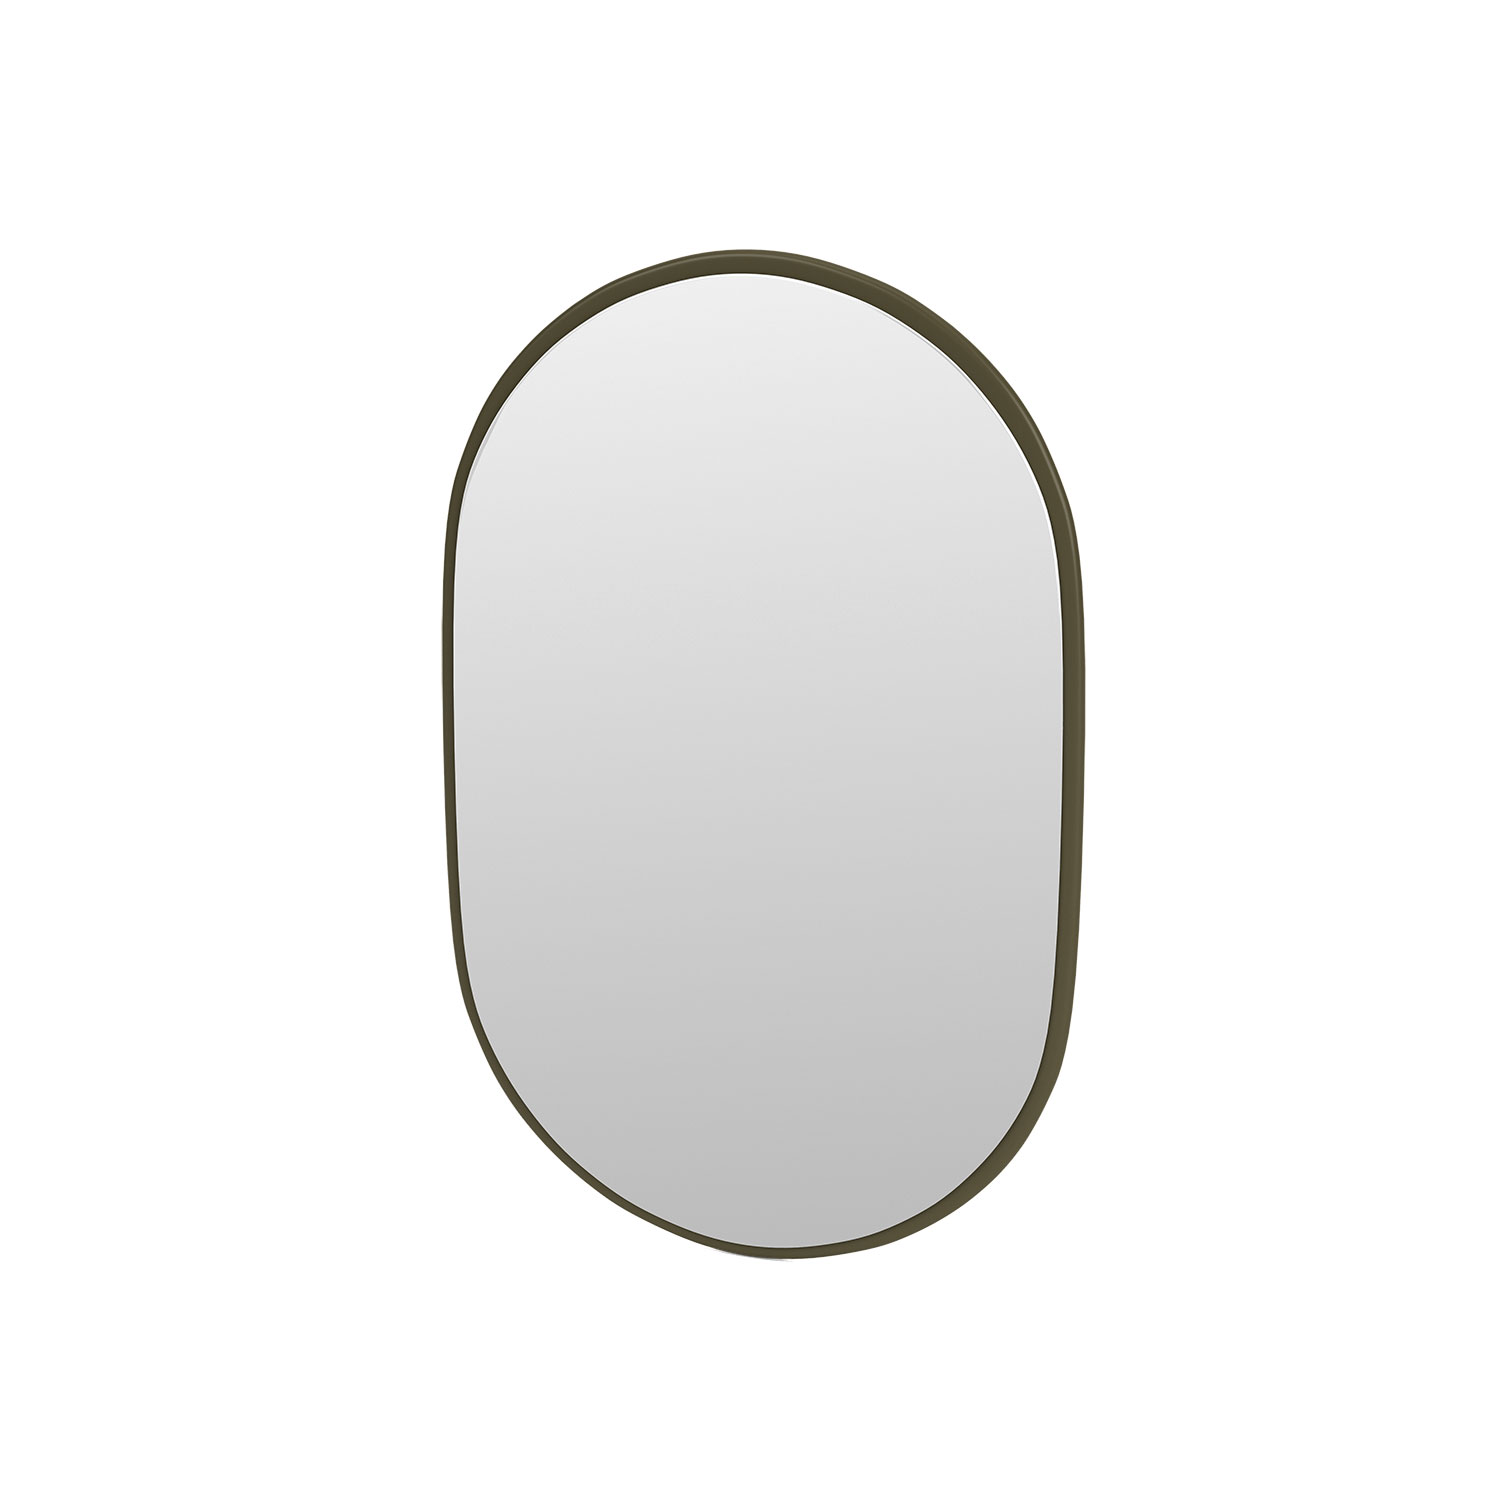 LOOK oval mirror, Oregano